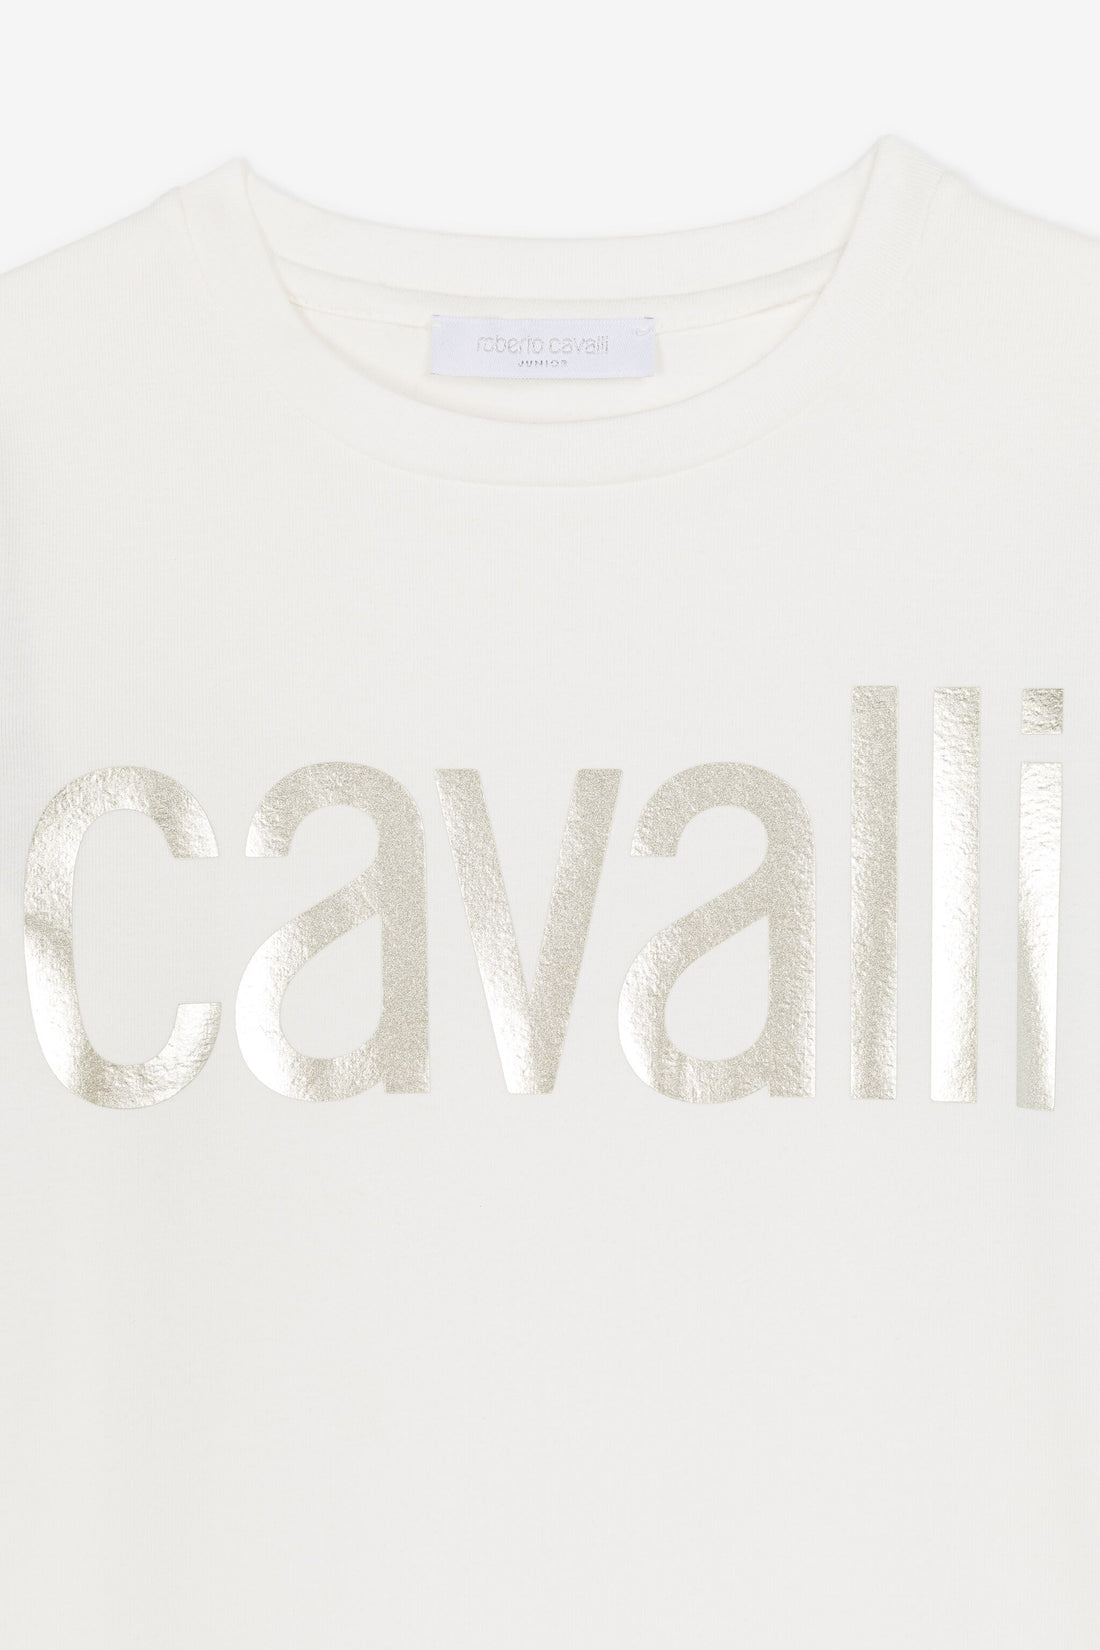 Roberto Cavalli Junior Girl Tshirt Dress Queen